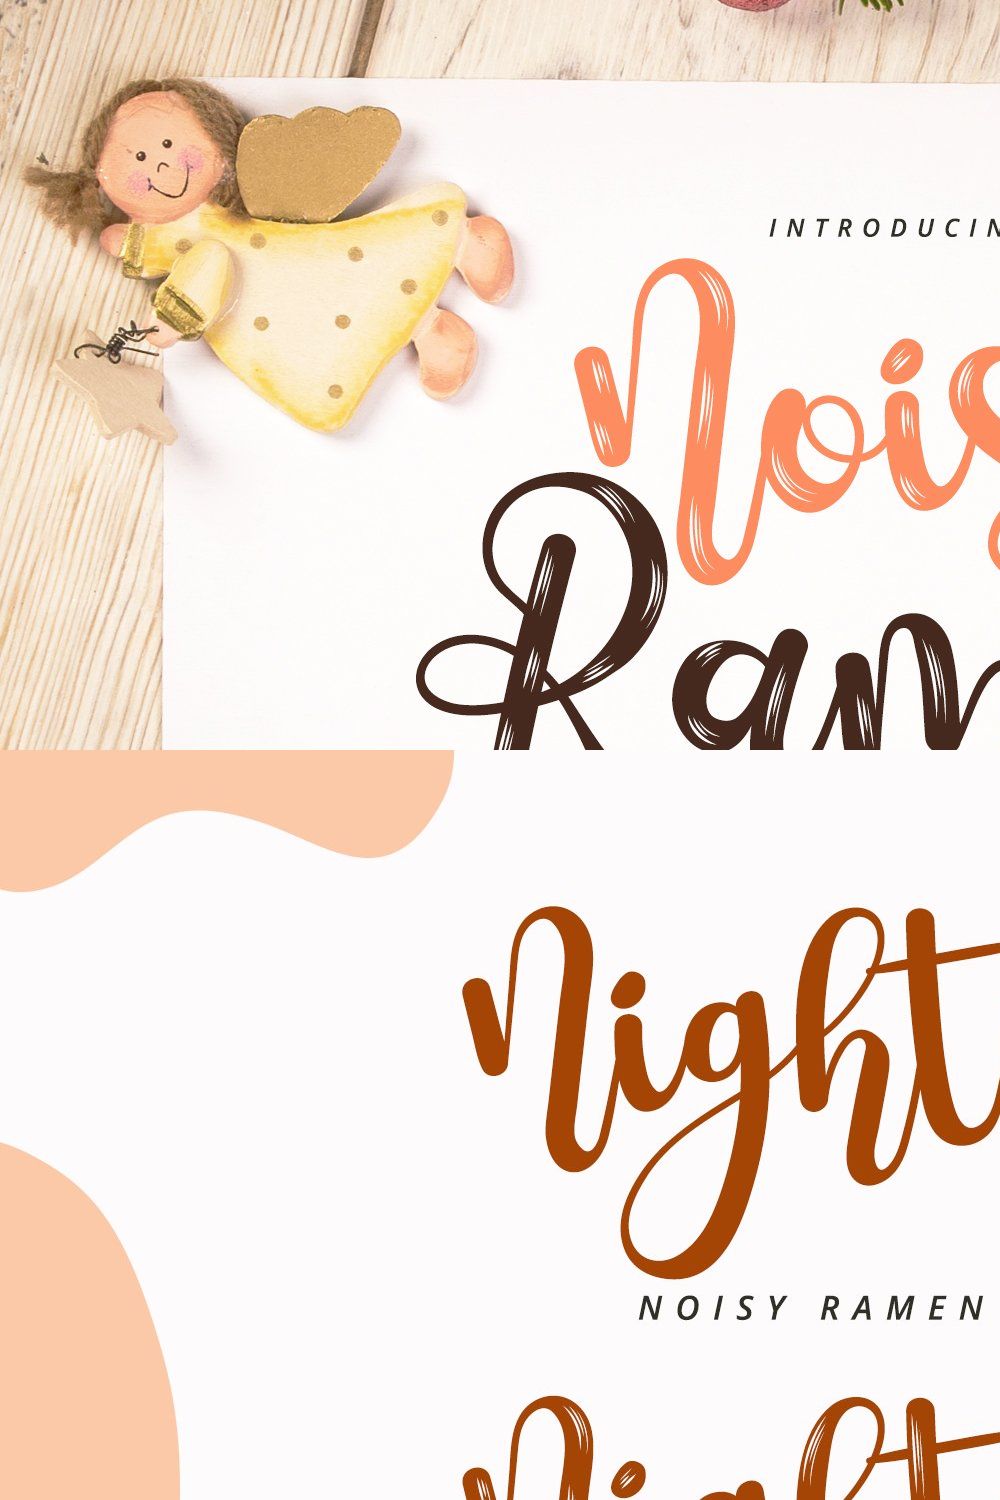 Noisy Ramen - Cute Handwritten Font pinterest preview image.